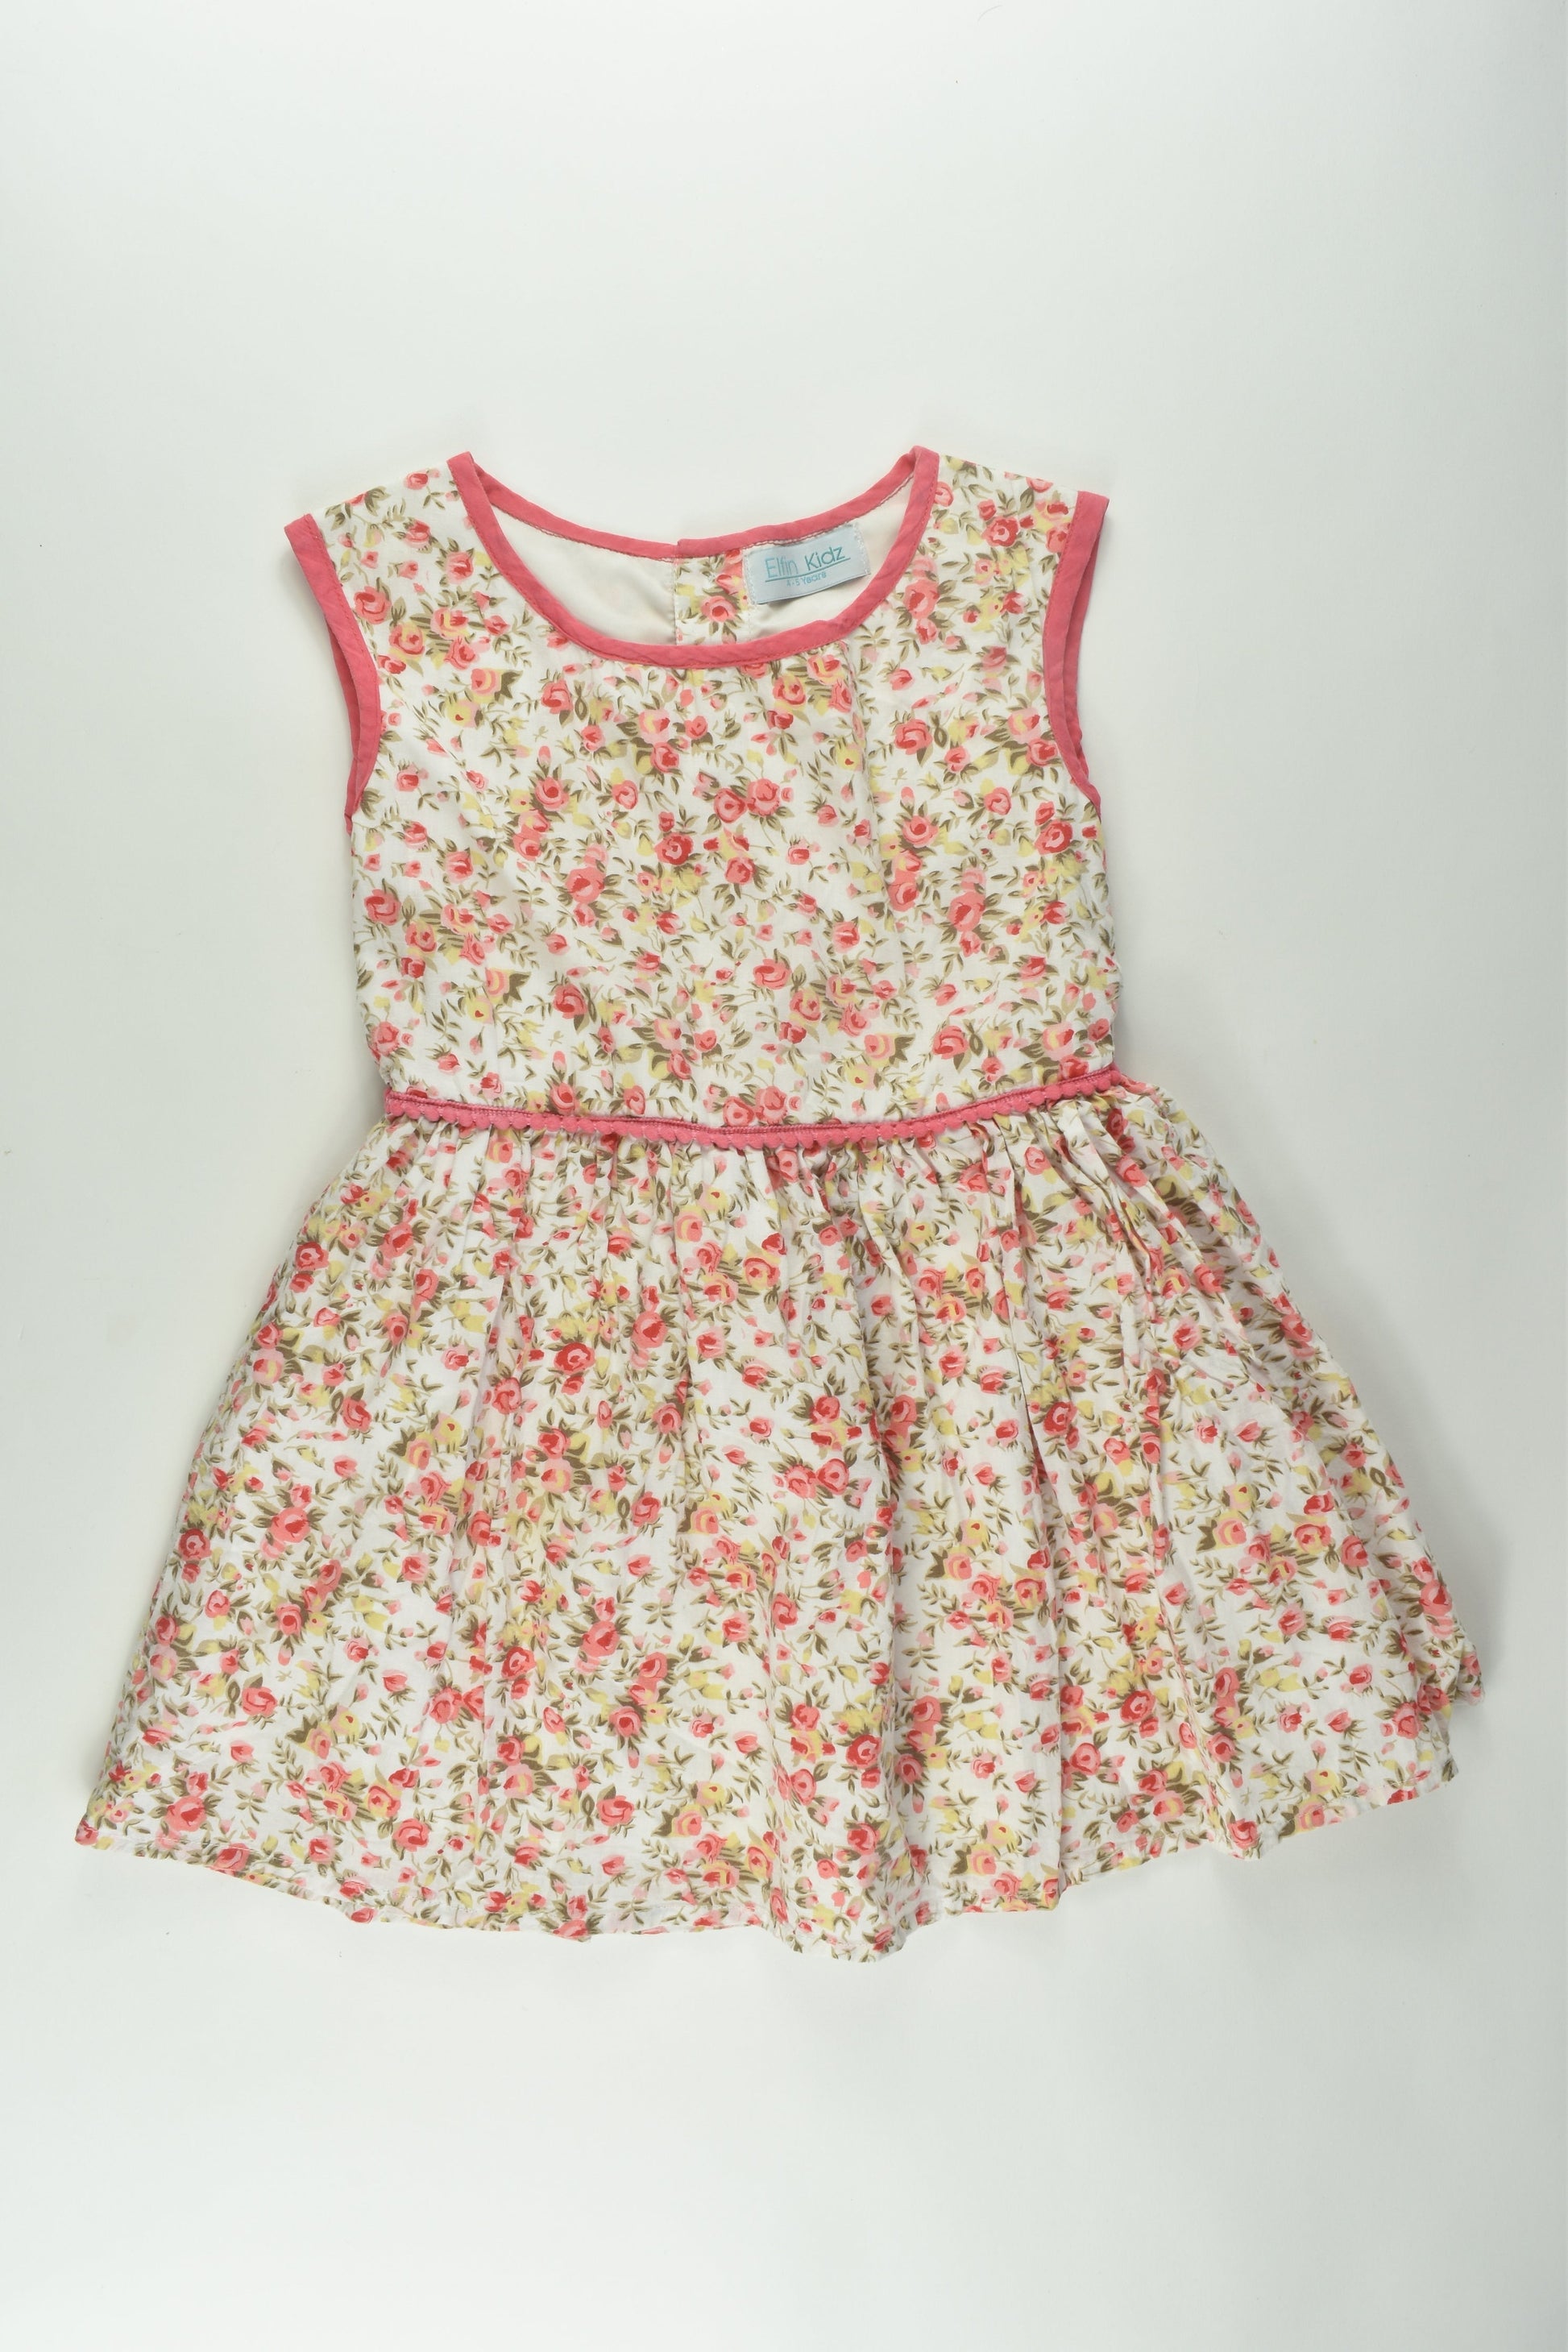 Elfin Kids Size 4-5 Lined Floral Dress